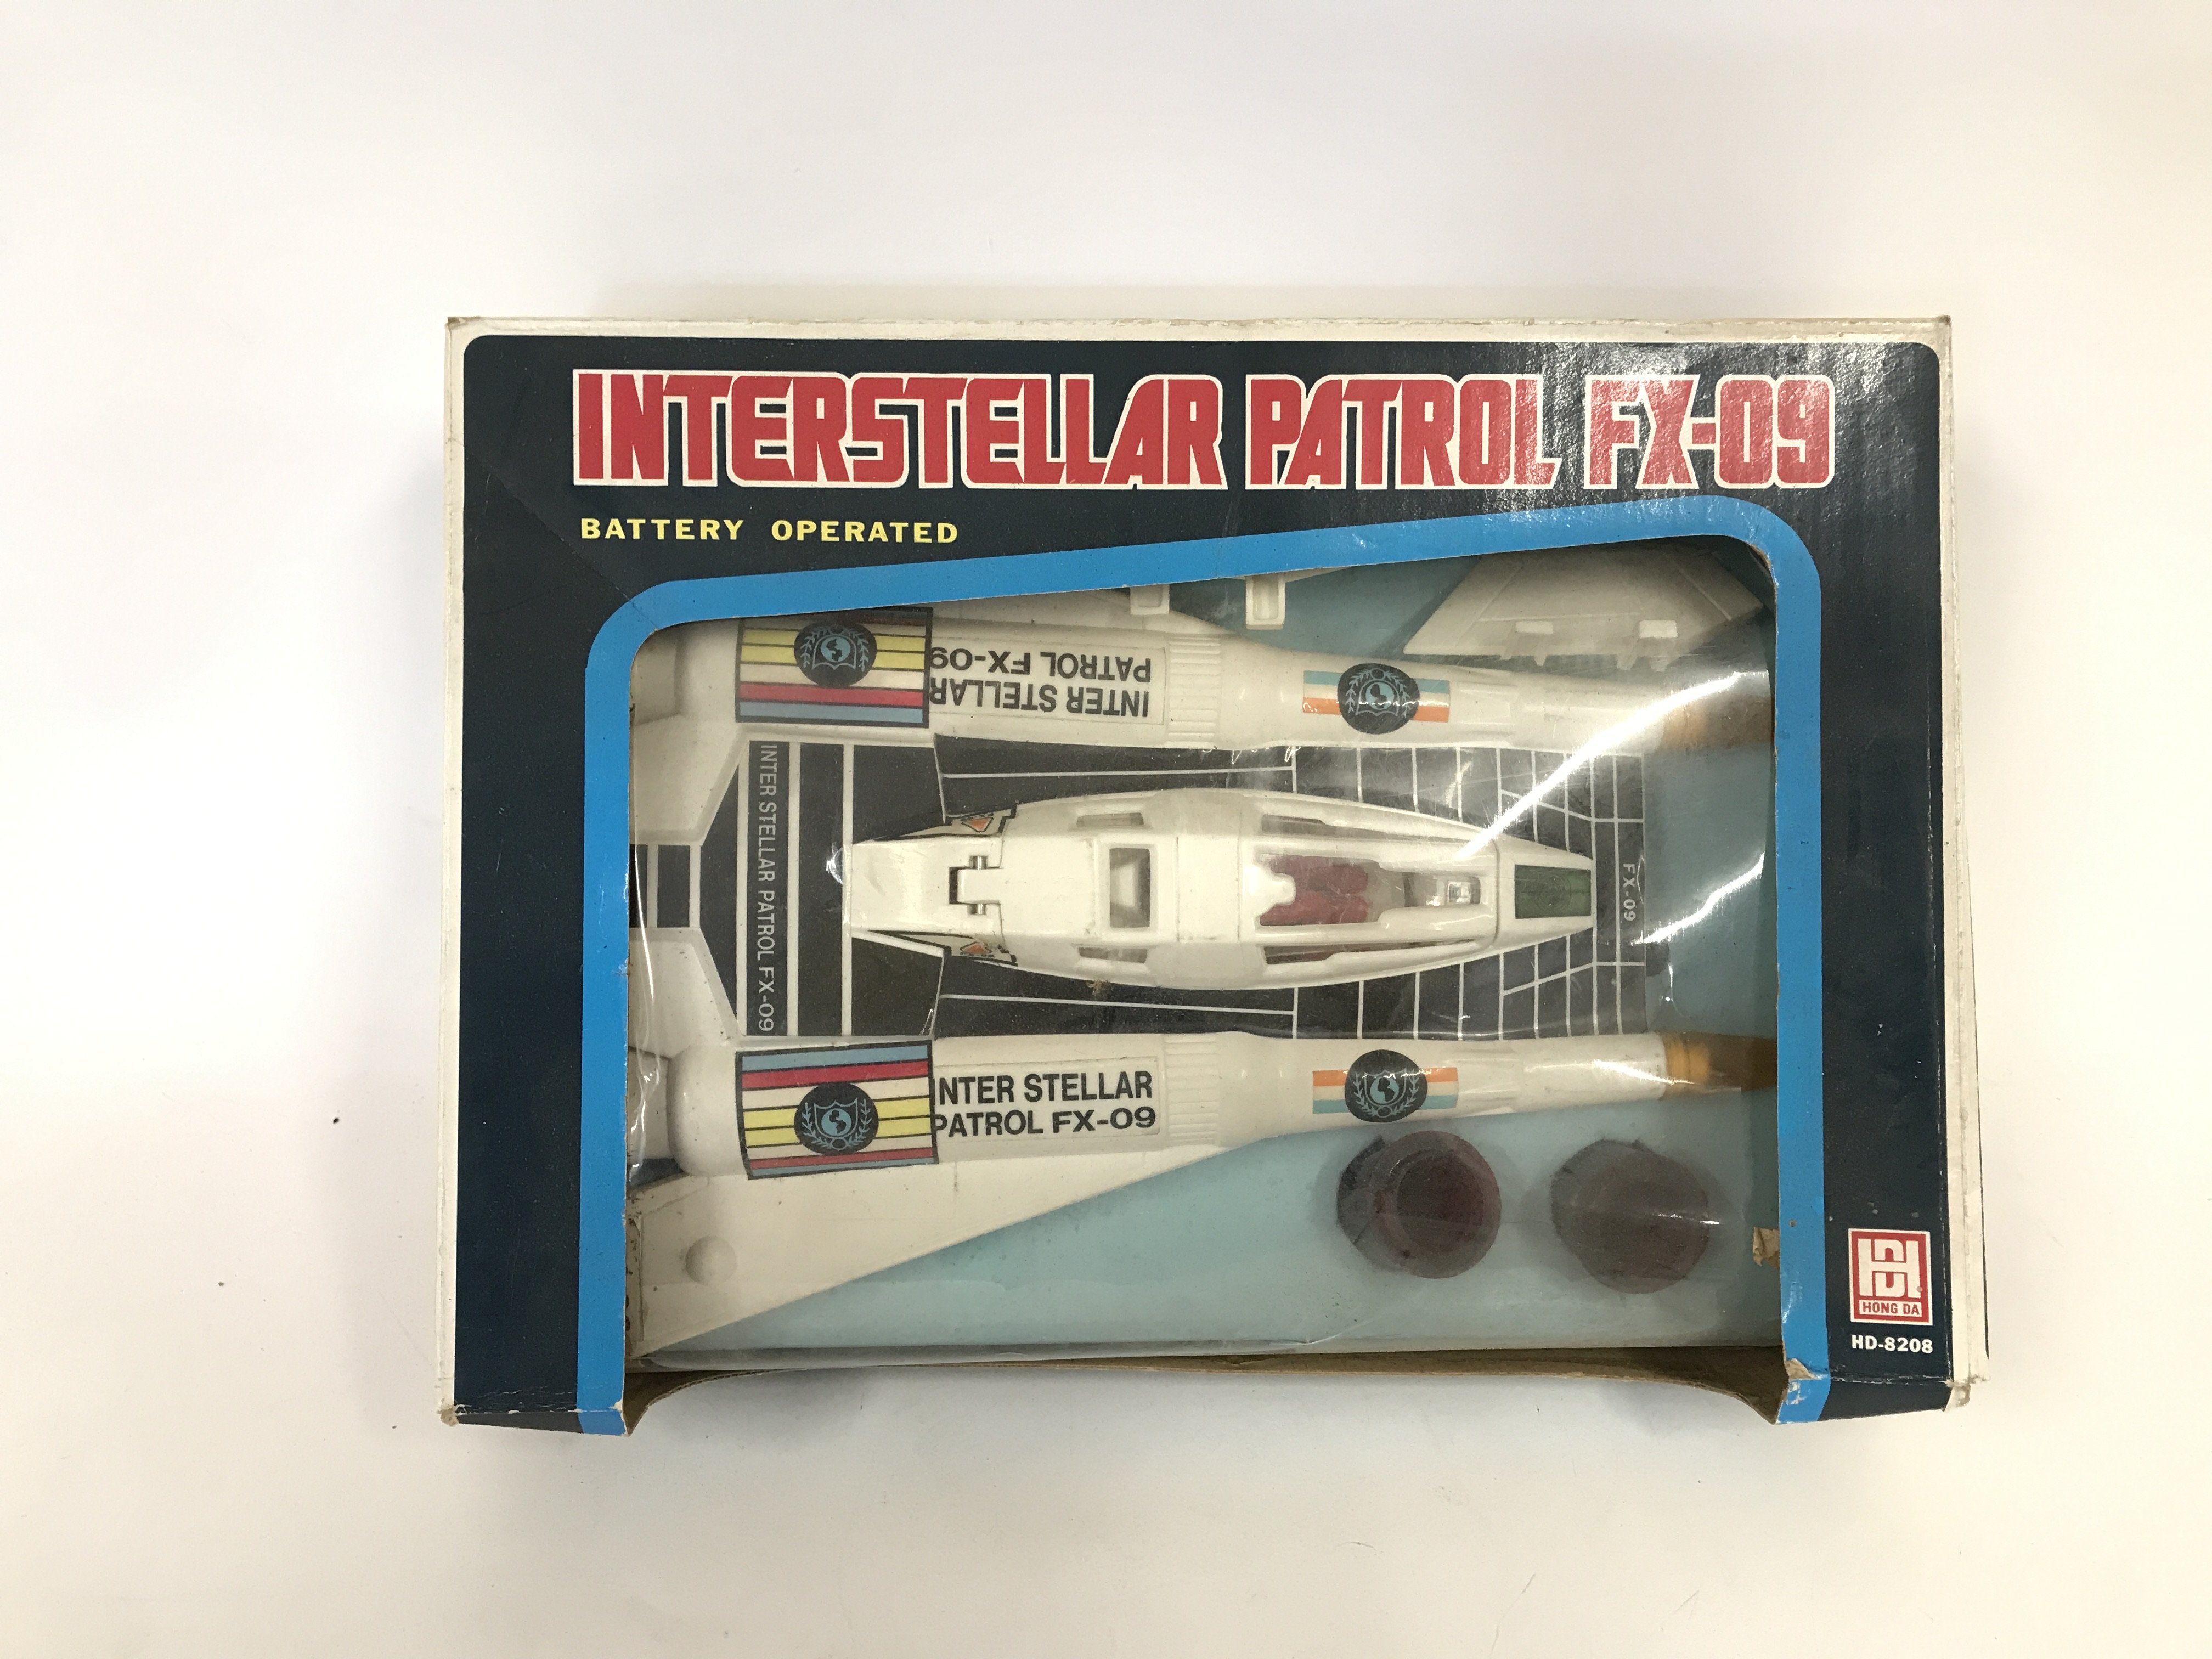 Interstellar Patrol FX-09 by Hong DA boxed (lightl